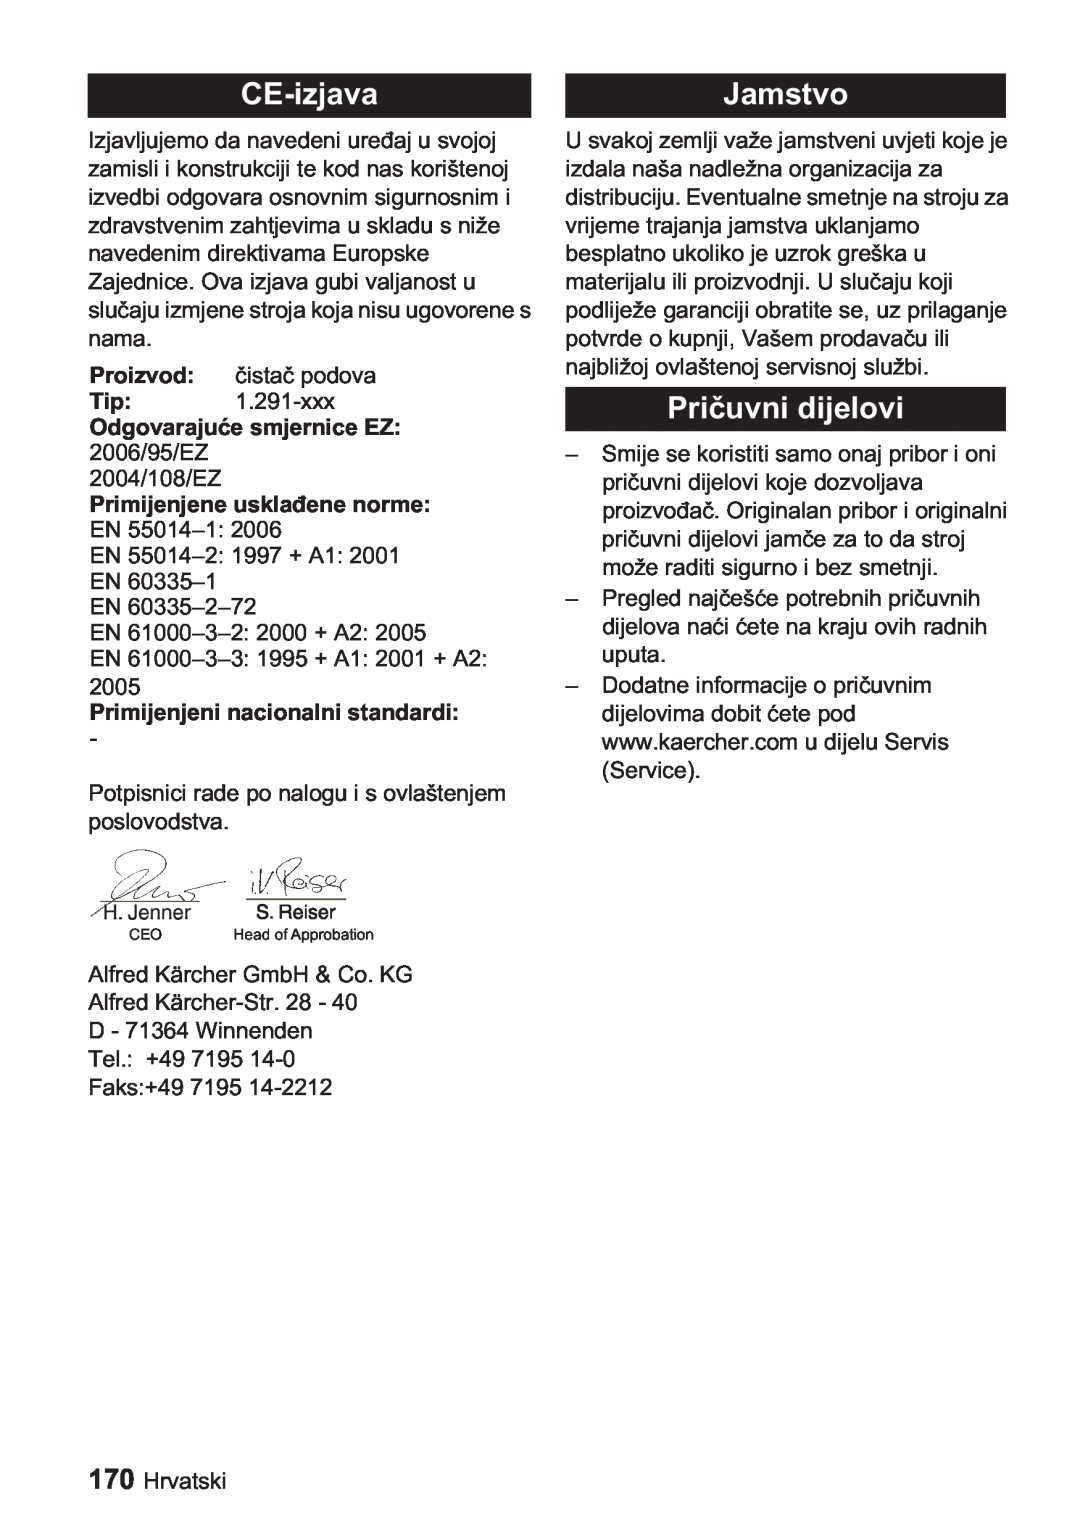 Karcher BDP 1500 CE-izjava, Jamstvo, Proizvod, Odgovaraju 2006/95/EZ 2004/108/EZ, Primijenjene usklaene norme EN 55014-1 